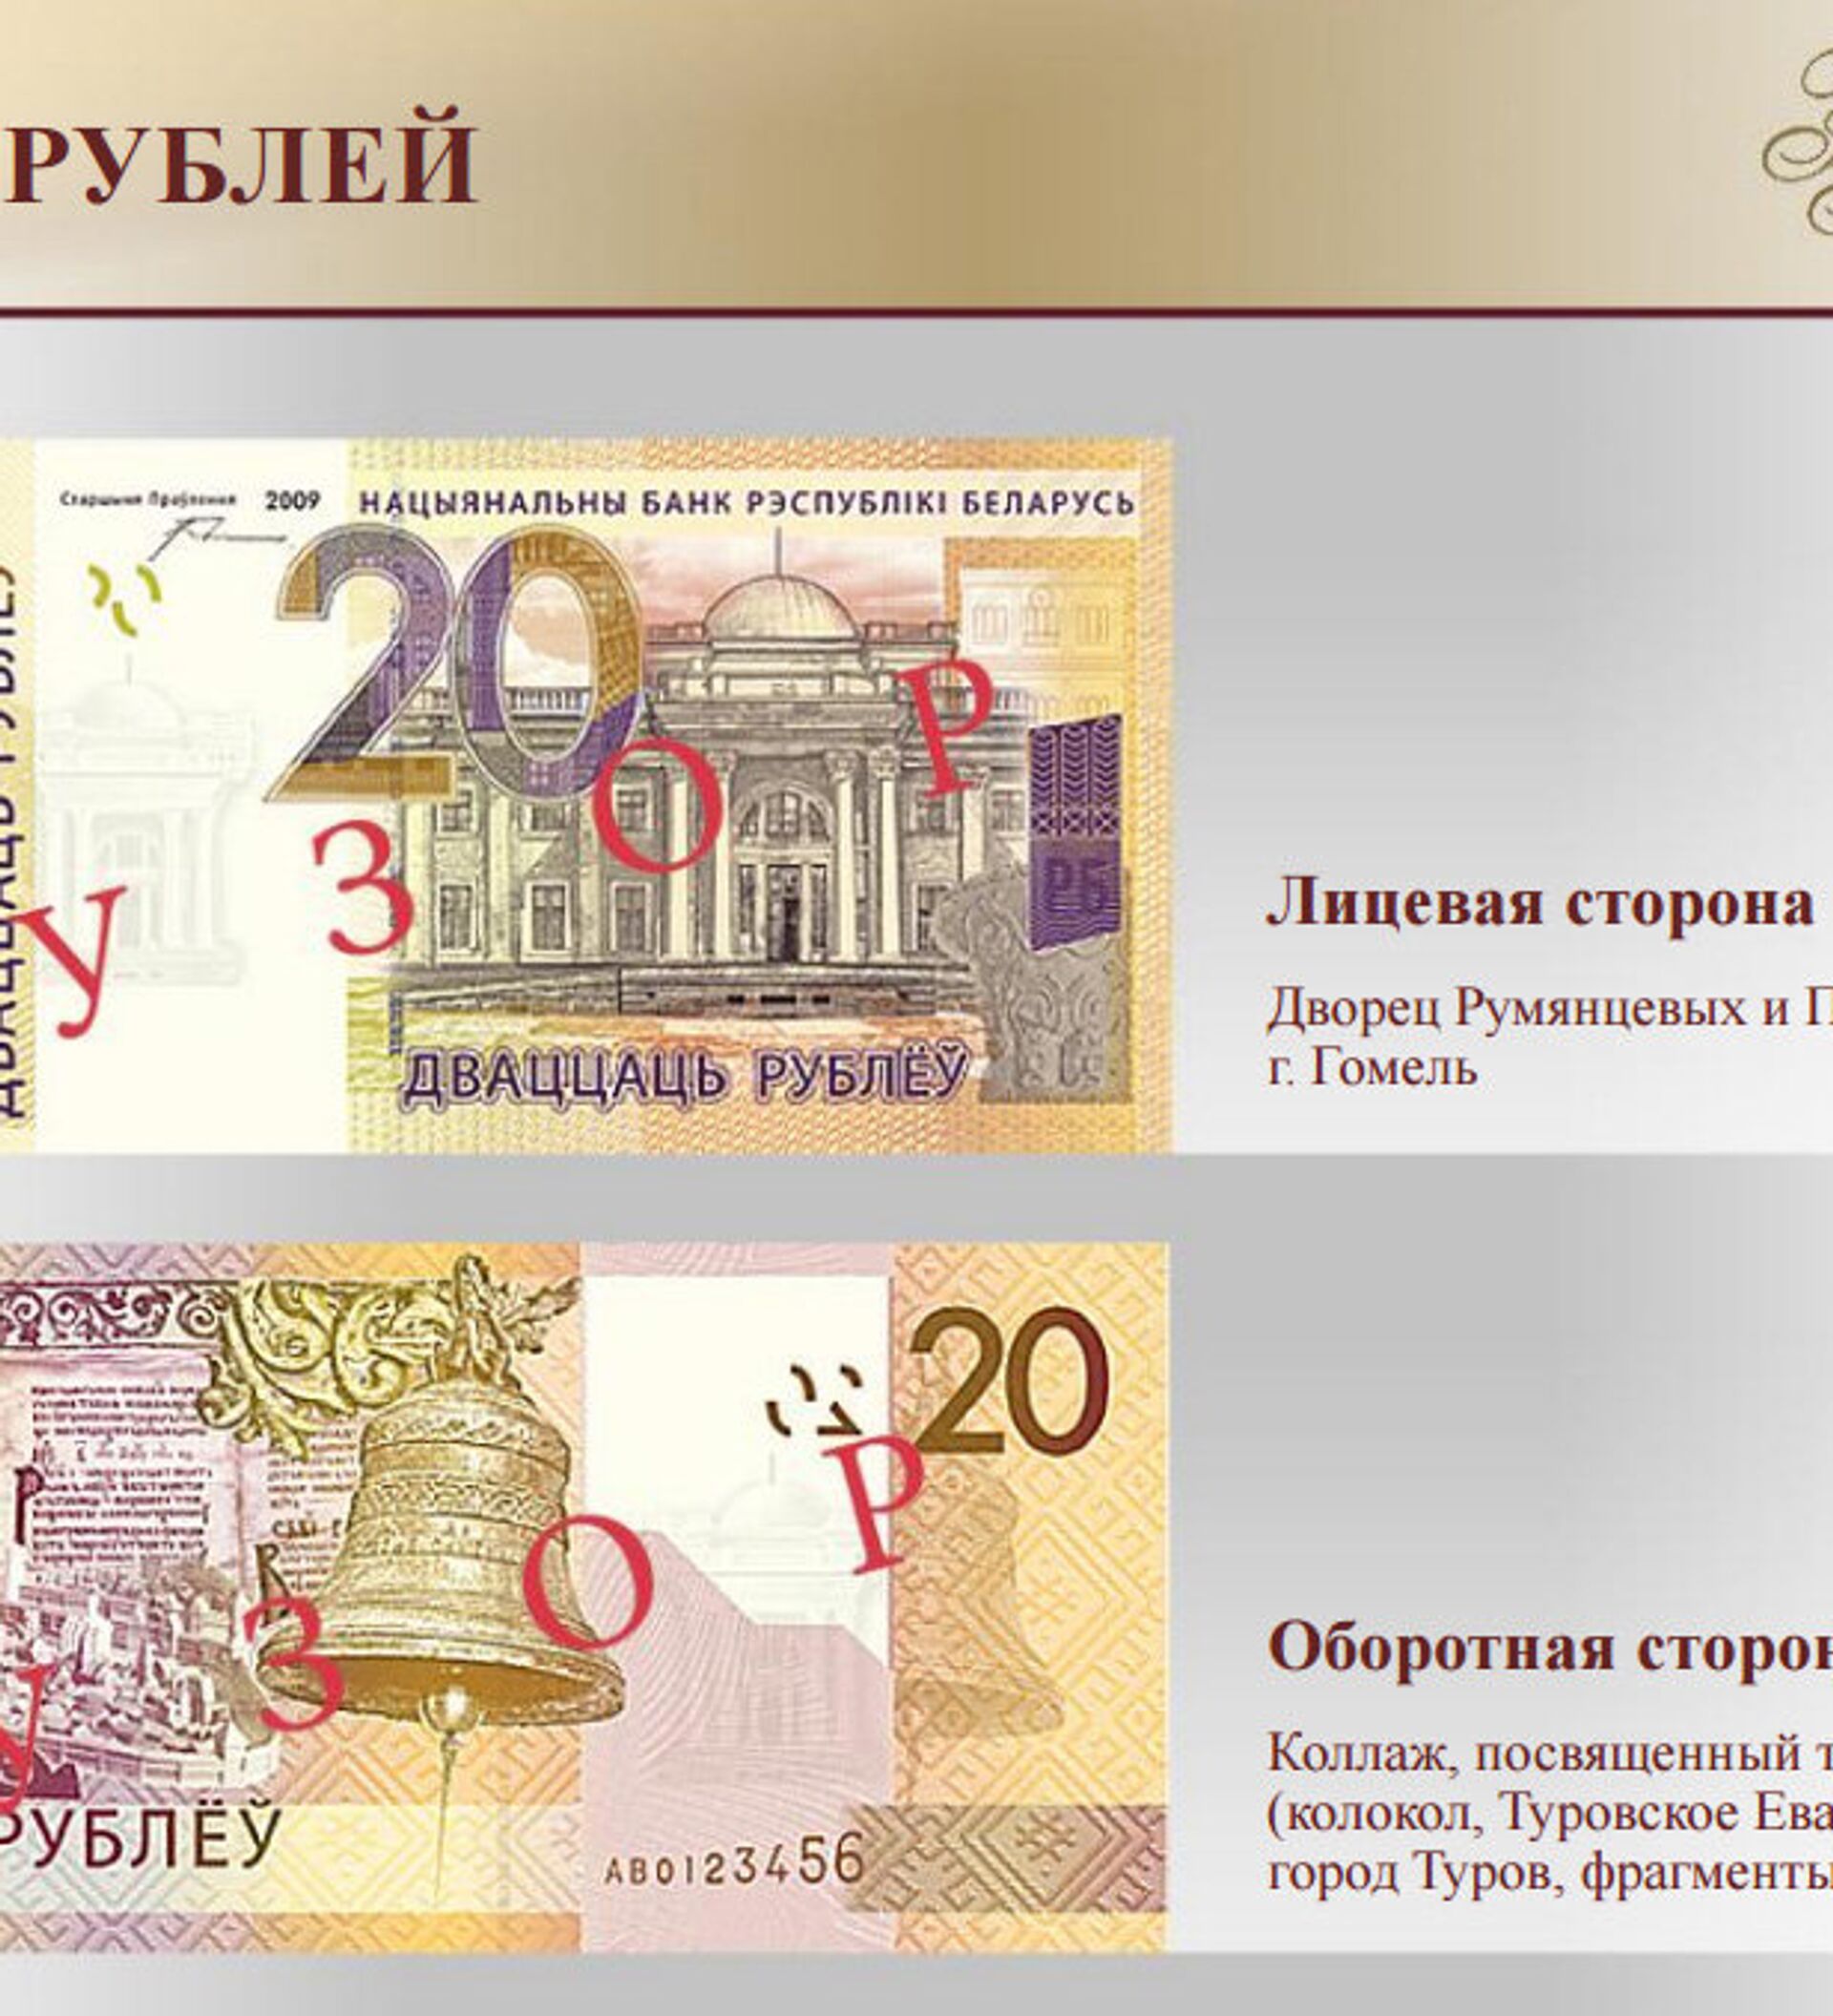 Перевести беларуский рубль